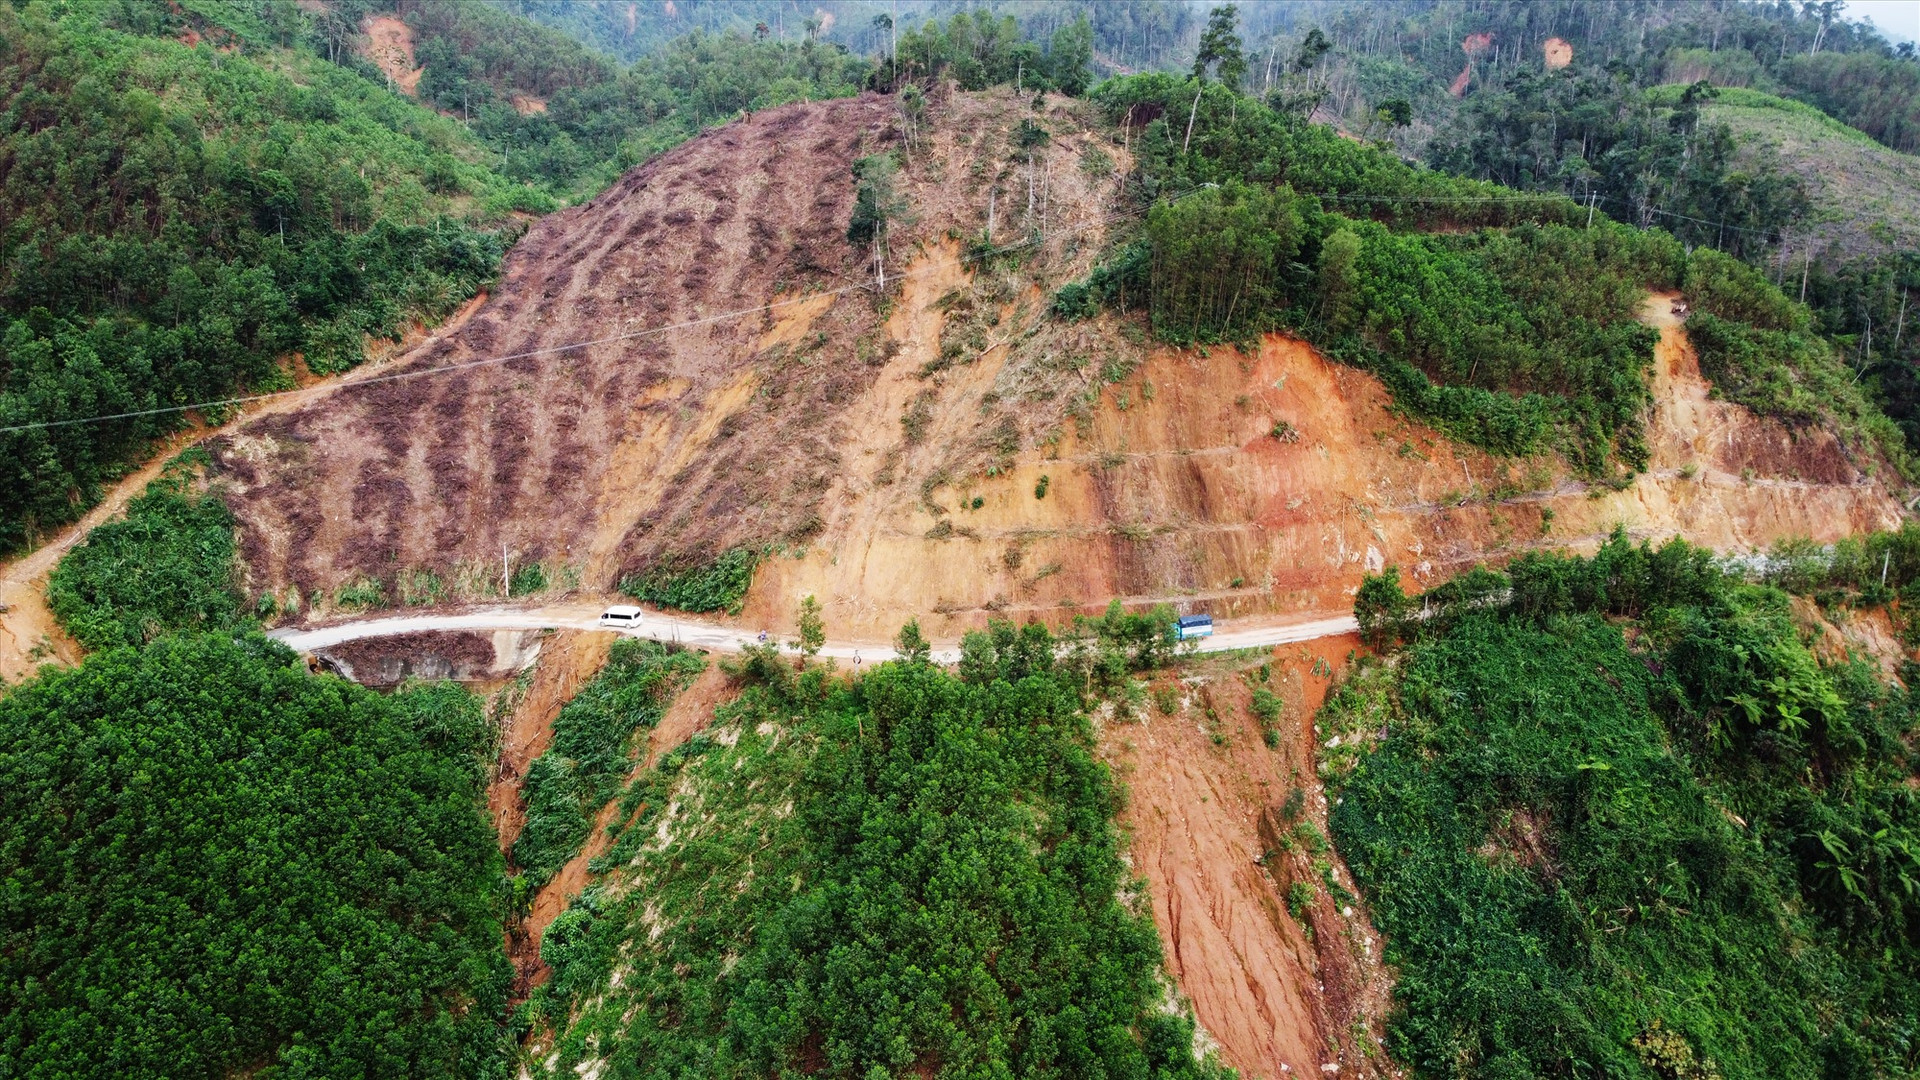 Quốc lộ 40B nối từ đường 1A tại TP Tam Kỳ đi các huyện trung du Phú Ninh, Tiên Phước và huyện miền núi Bắc Trà My, Nam Trà My đến tỉnh Kon Tum, dài 210 km. Trong đó, 70 km từ huyện Bắc Trà My đến hết Nam Trà My đi qua nhiều đồi núi thường xuyên bị sạt lở sau mưa bão.